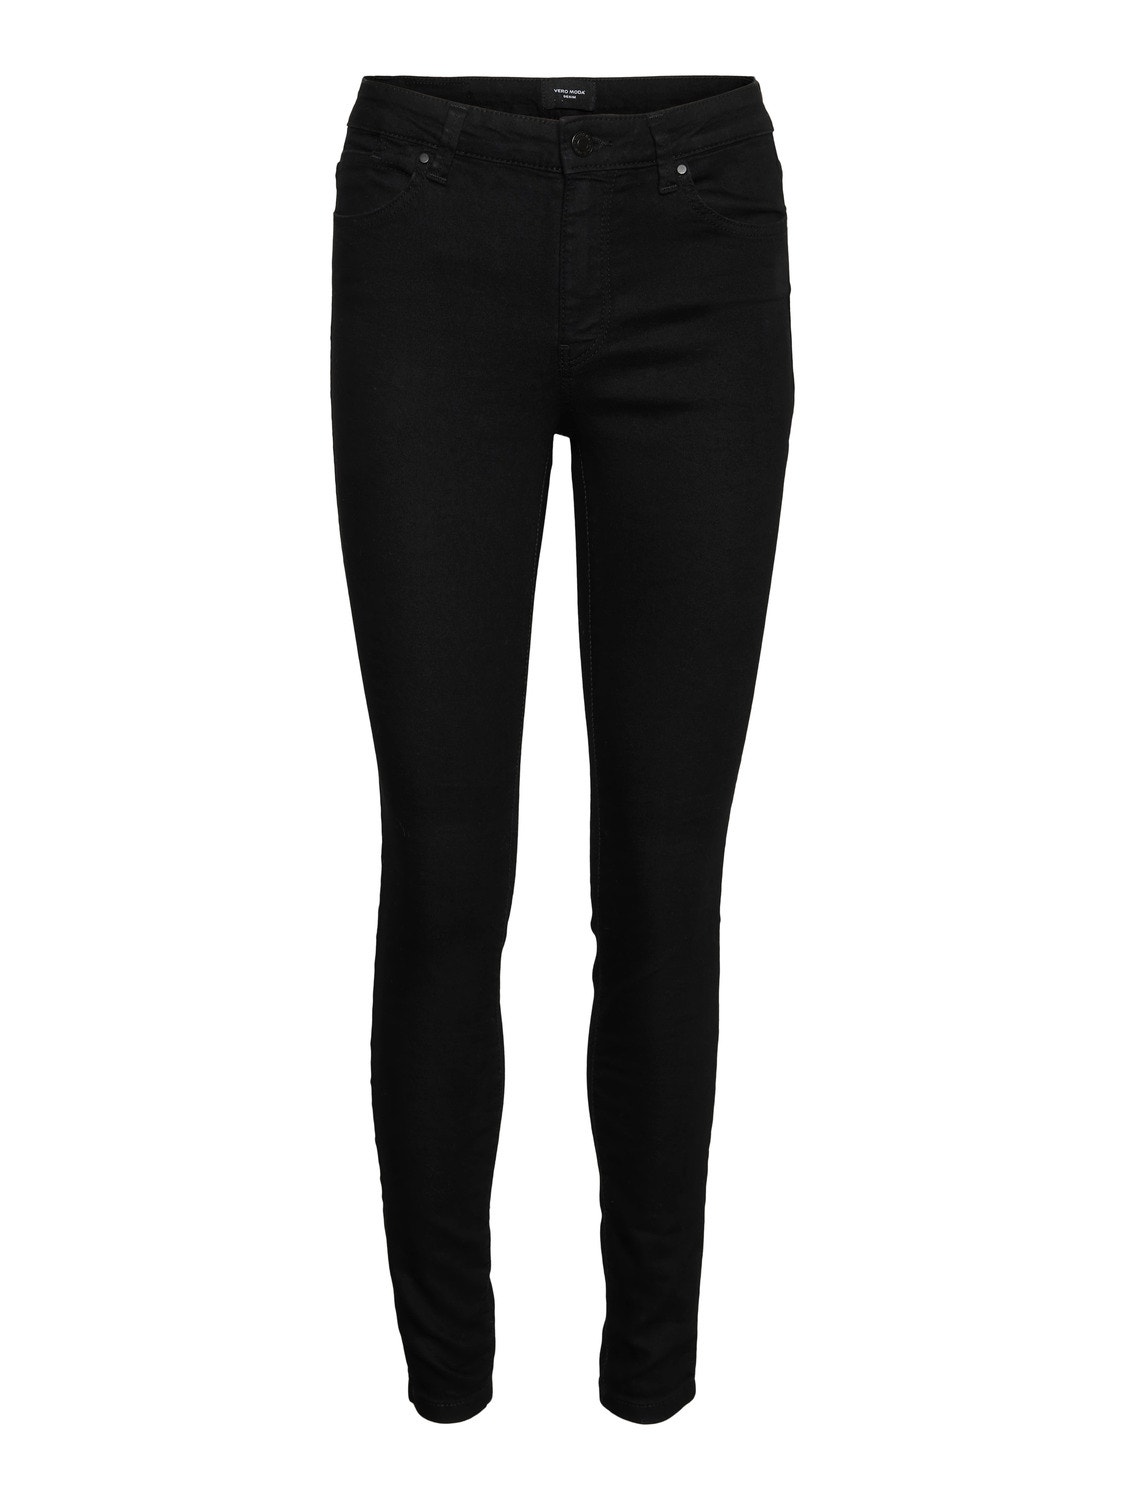 Vero Moda VMFLEX-IT Skinny Fit Jeans -Black - 10282223